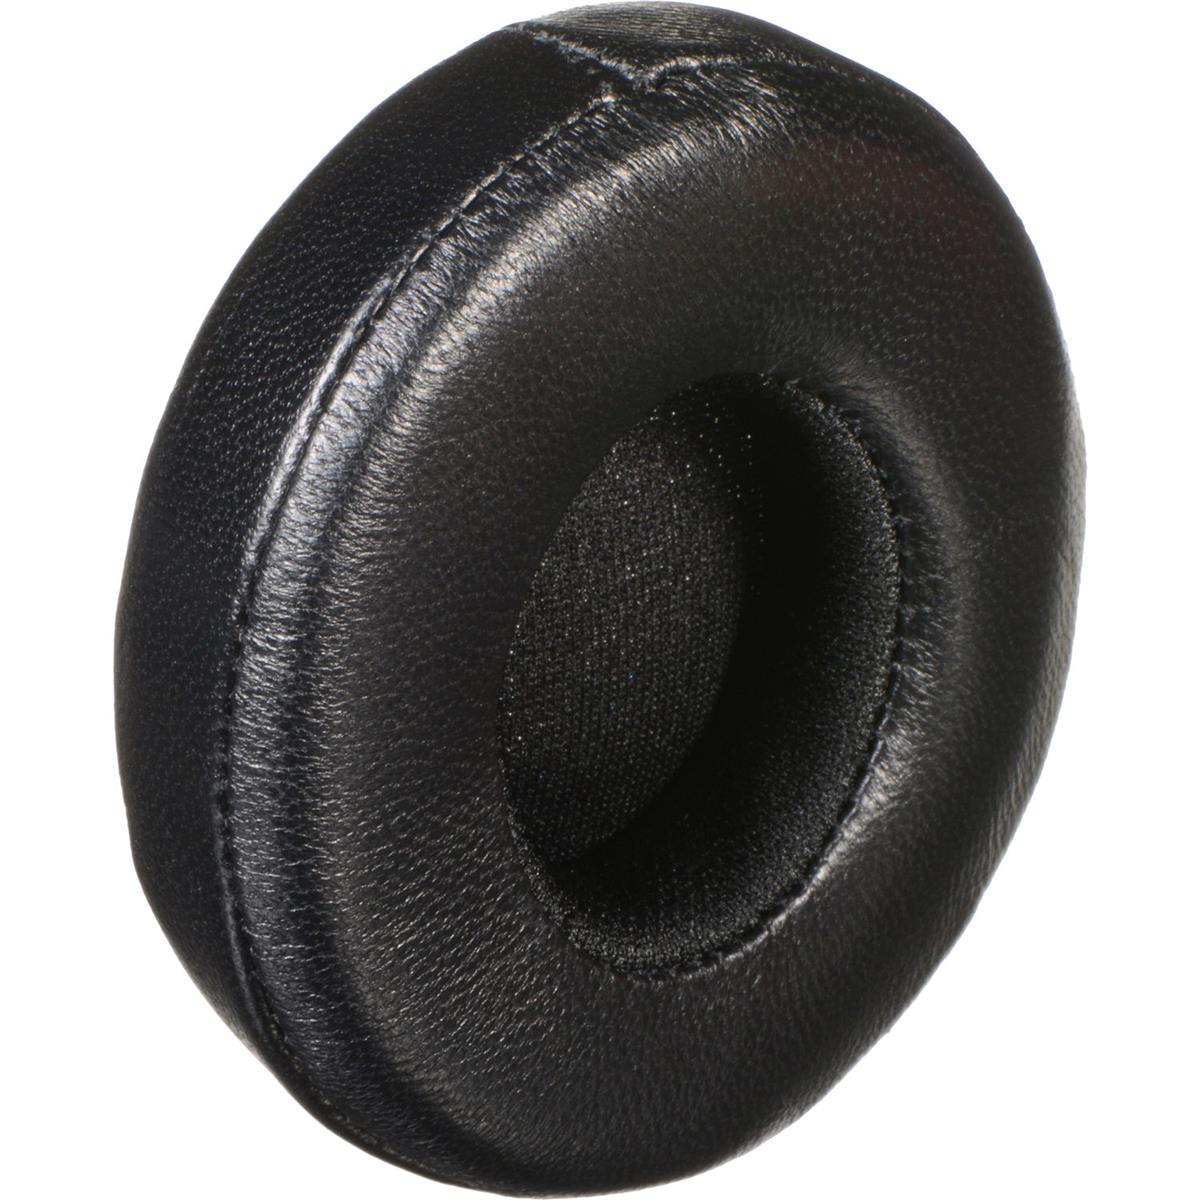 

Dekoni Audio Elite Sheepskin Ear Pads for Beats by Dr. Dre Solo 2.0 Headphones